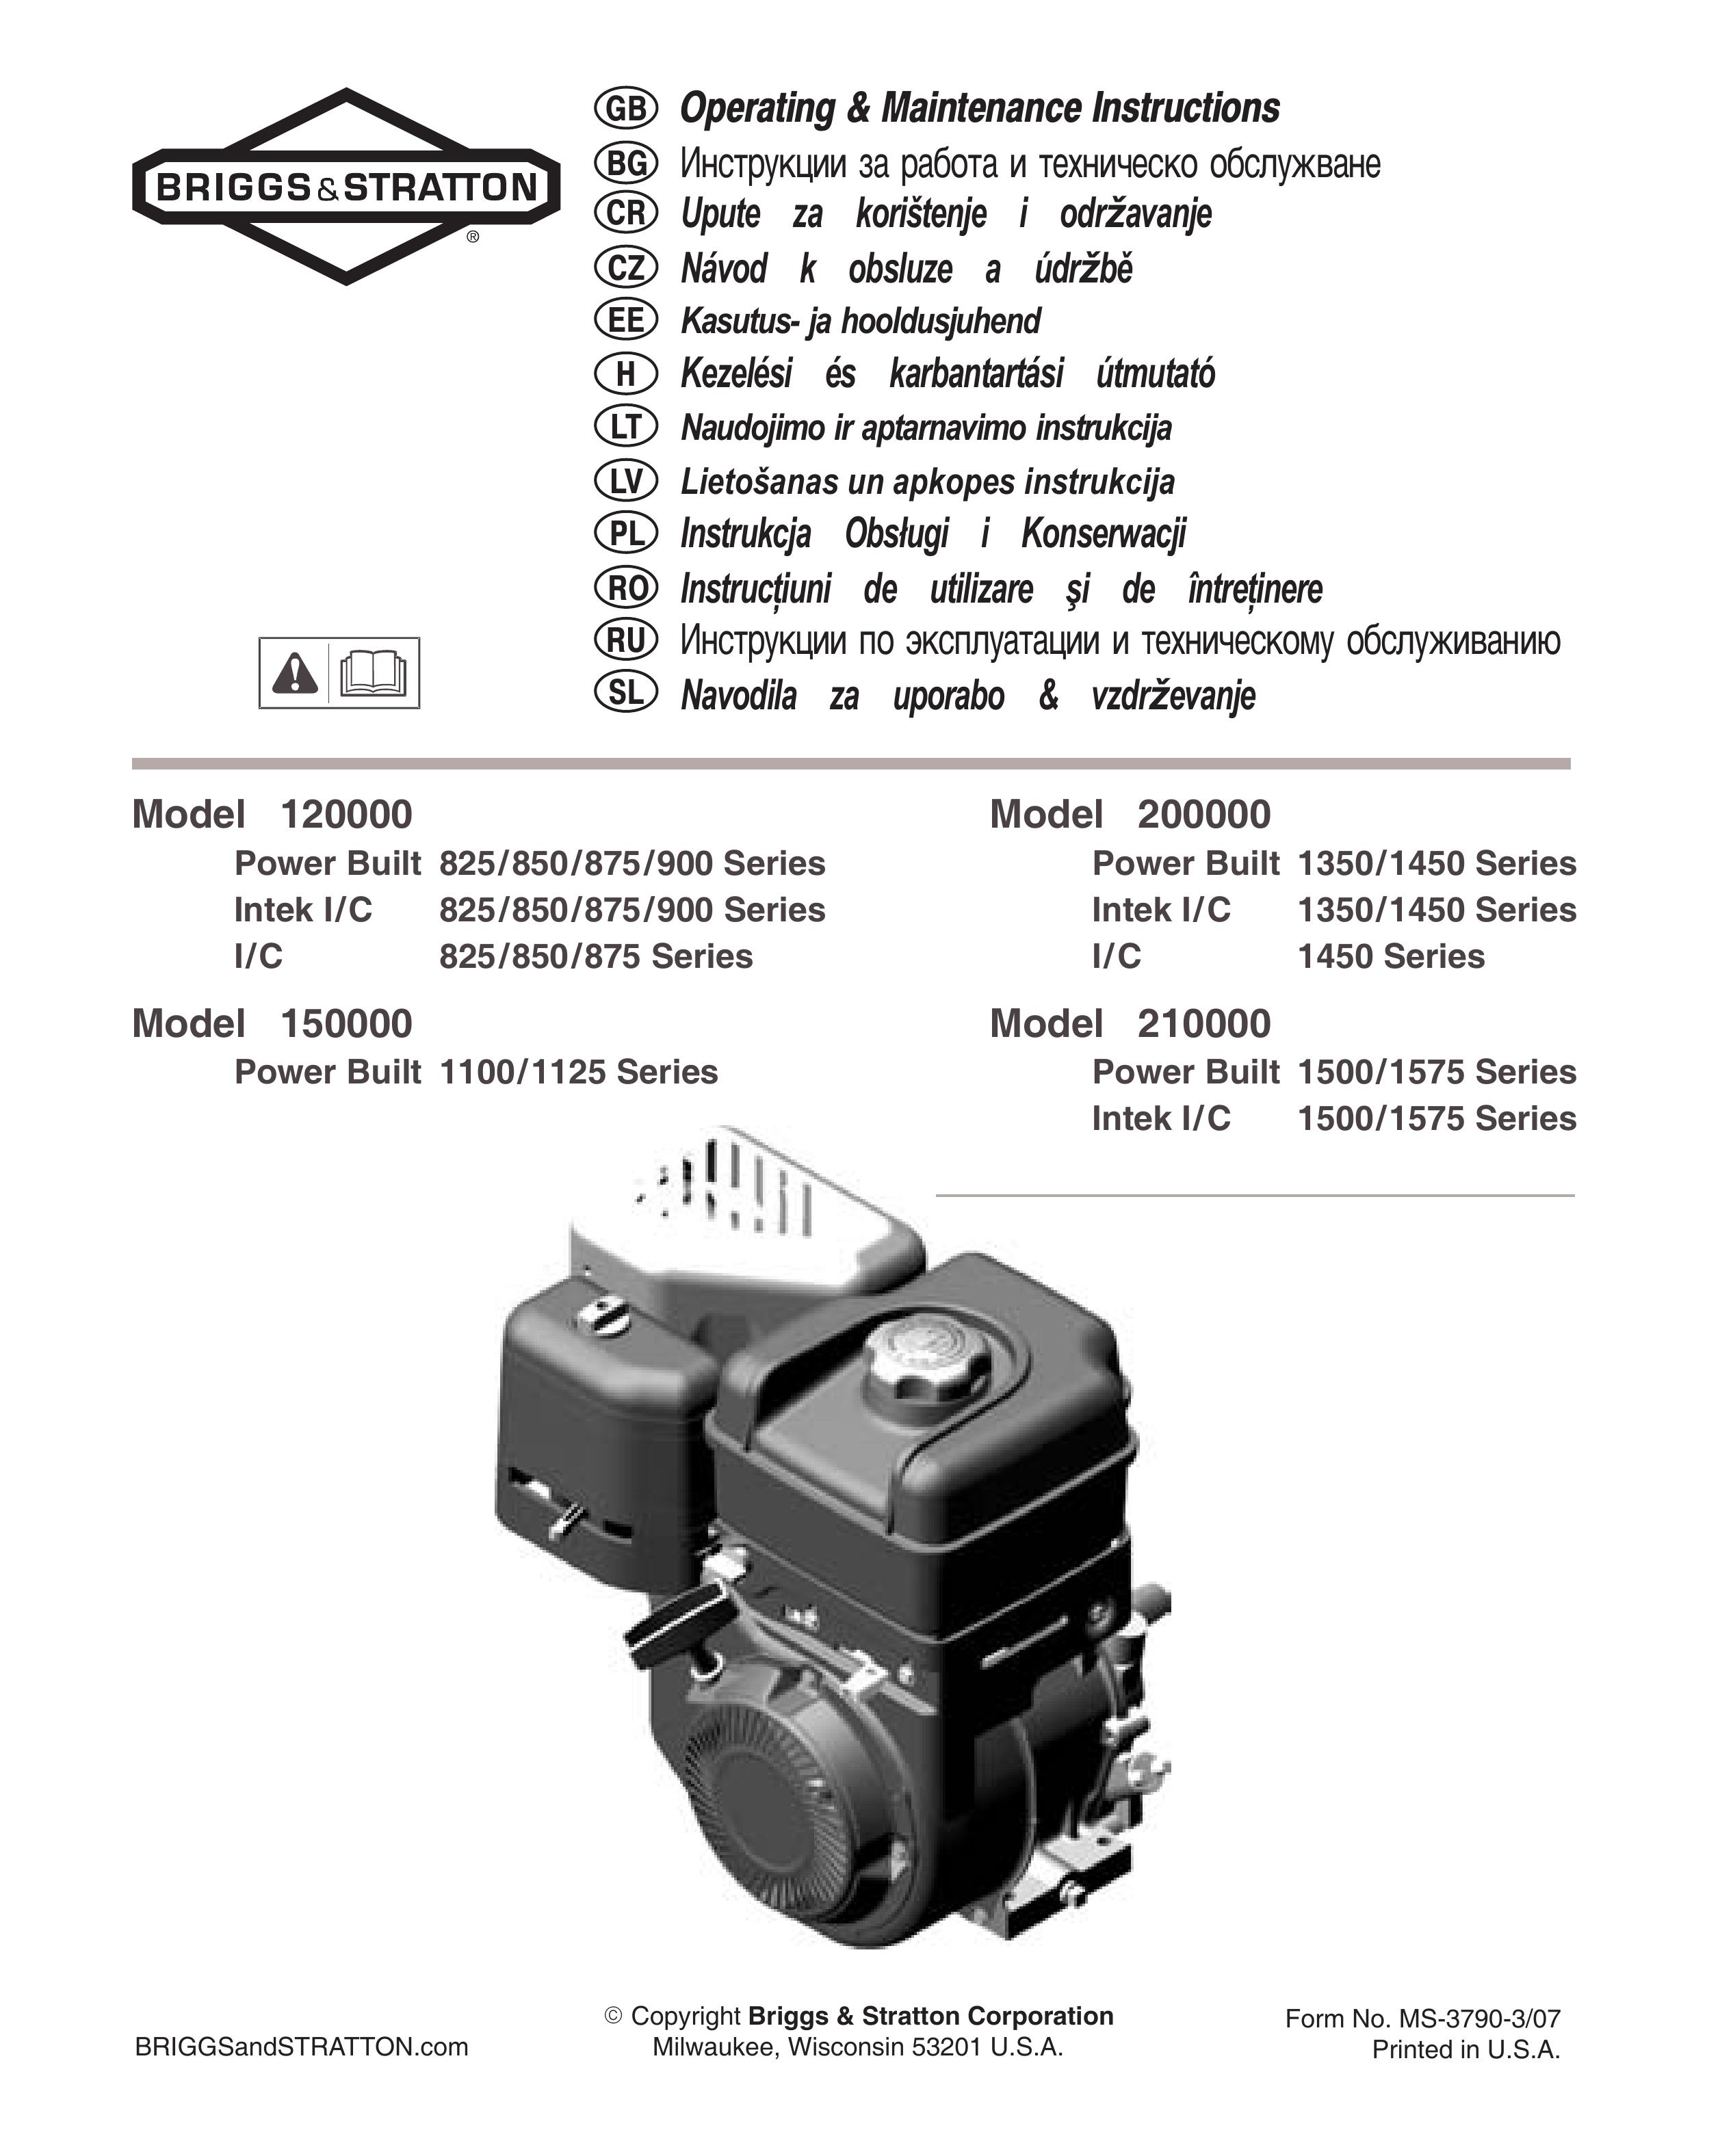 Briggs & Stratton Model 200000 Lawn Mower Accessory User Manual